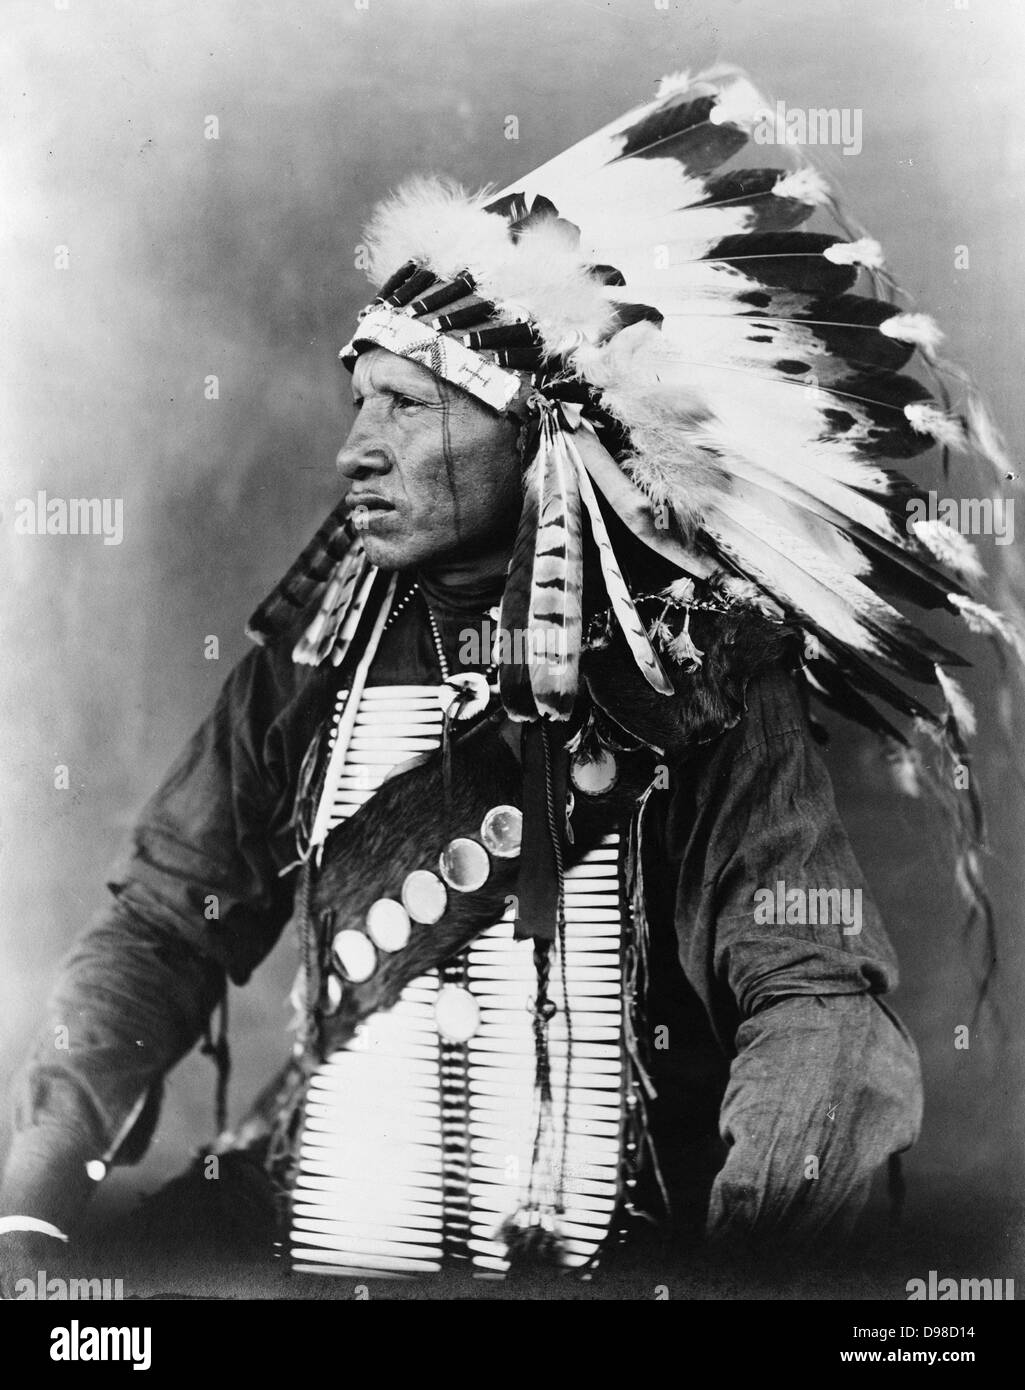 Oiseau rouge, Indien Sioux, half-length portrait, assis, face vers la gauche, portant une coiffe de plumes, c1908. Photographie de John A. Johnson Banque D'Images